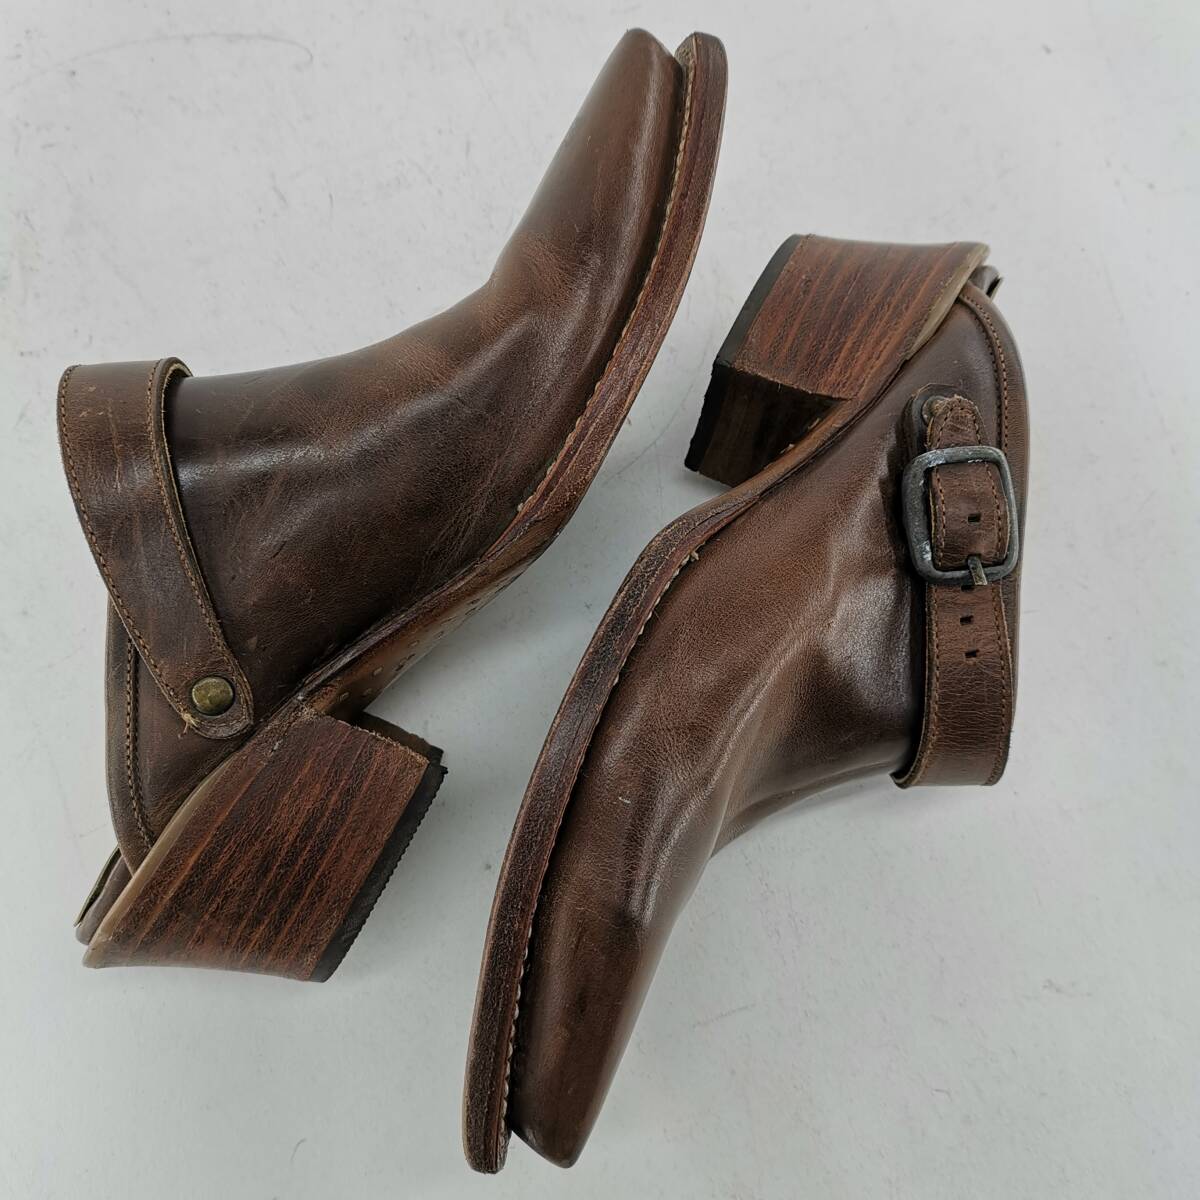 送料無料 メキシコ製 アダムスブーツ ADAM'S BOOTS サンダル レザー ブラウン 茶色 6E (JP25-25.5cm) ヒール高約6cm ウエスタン 革#12461